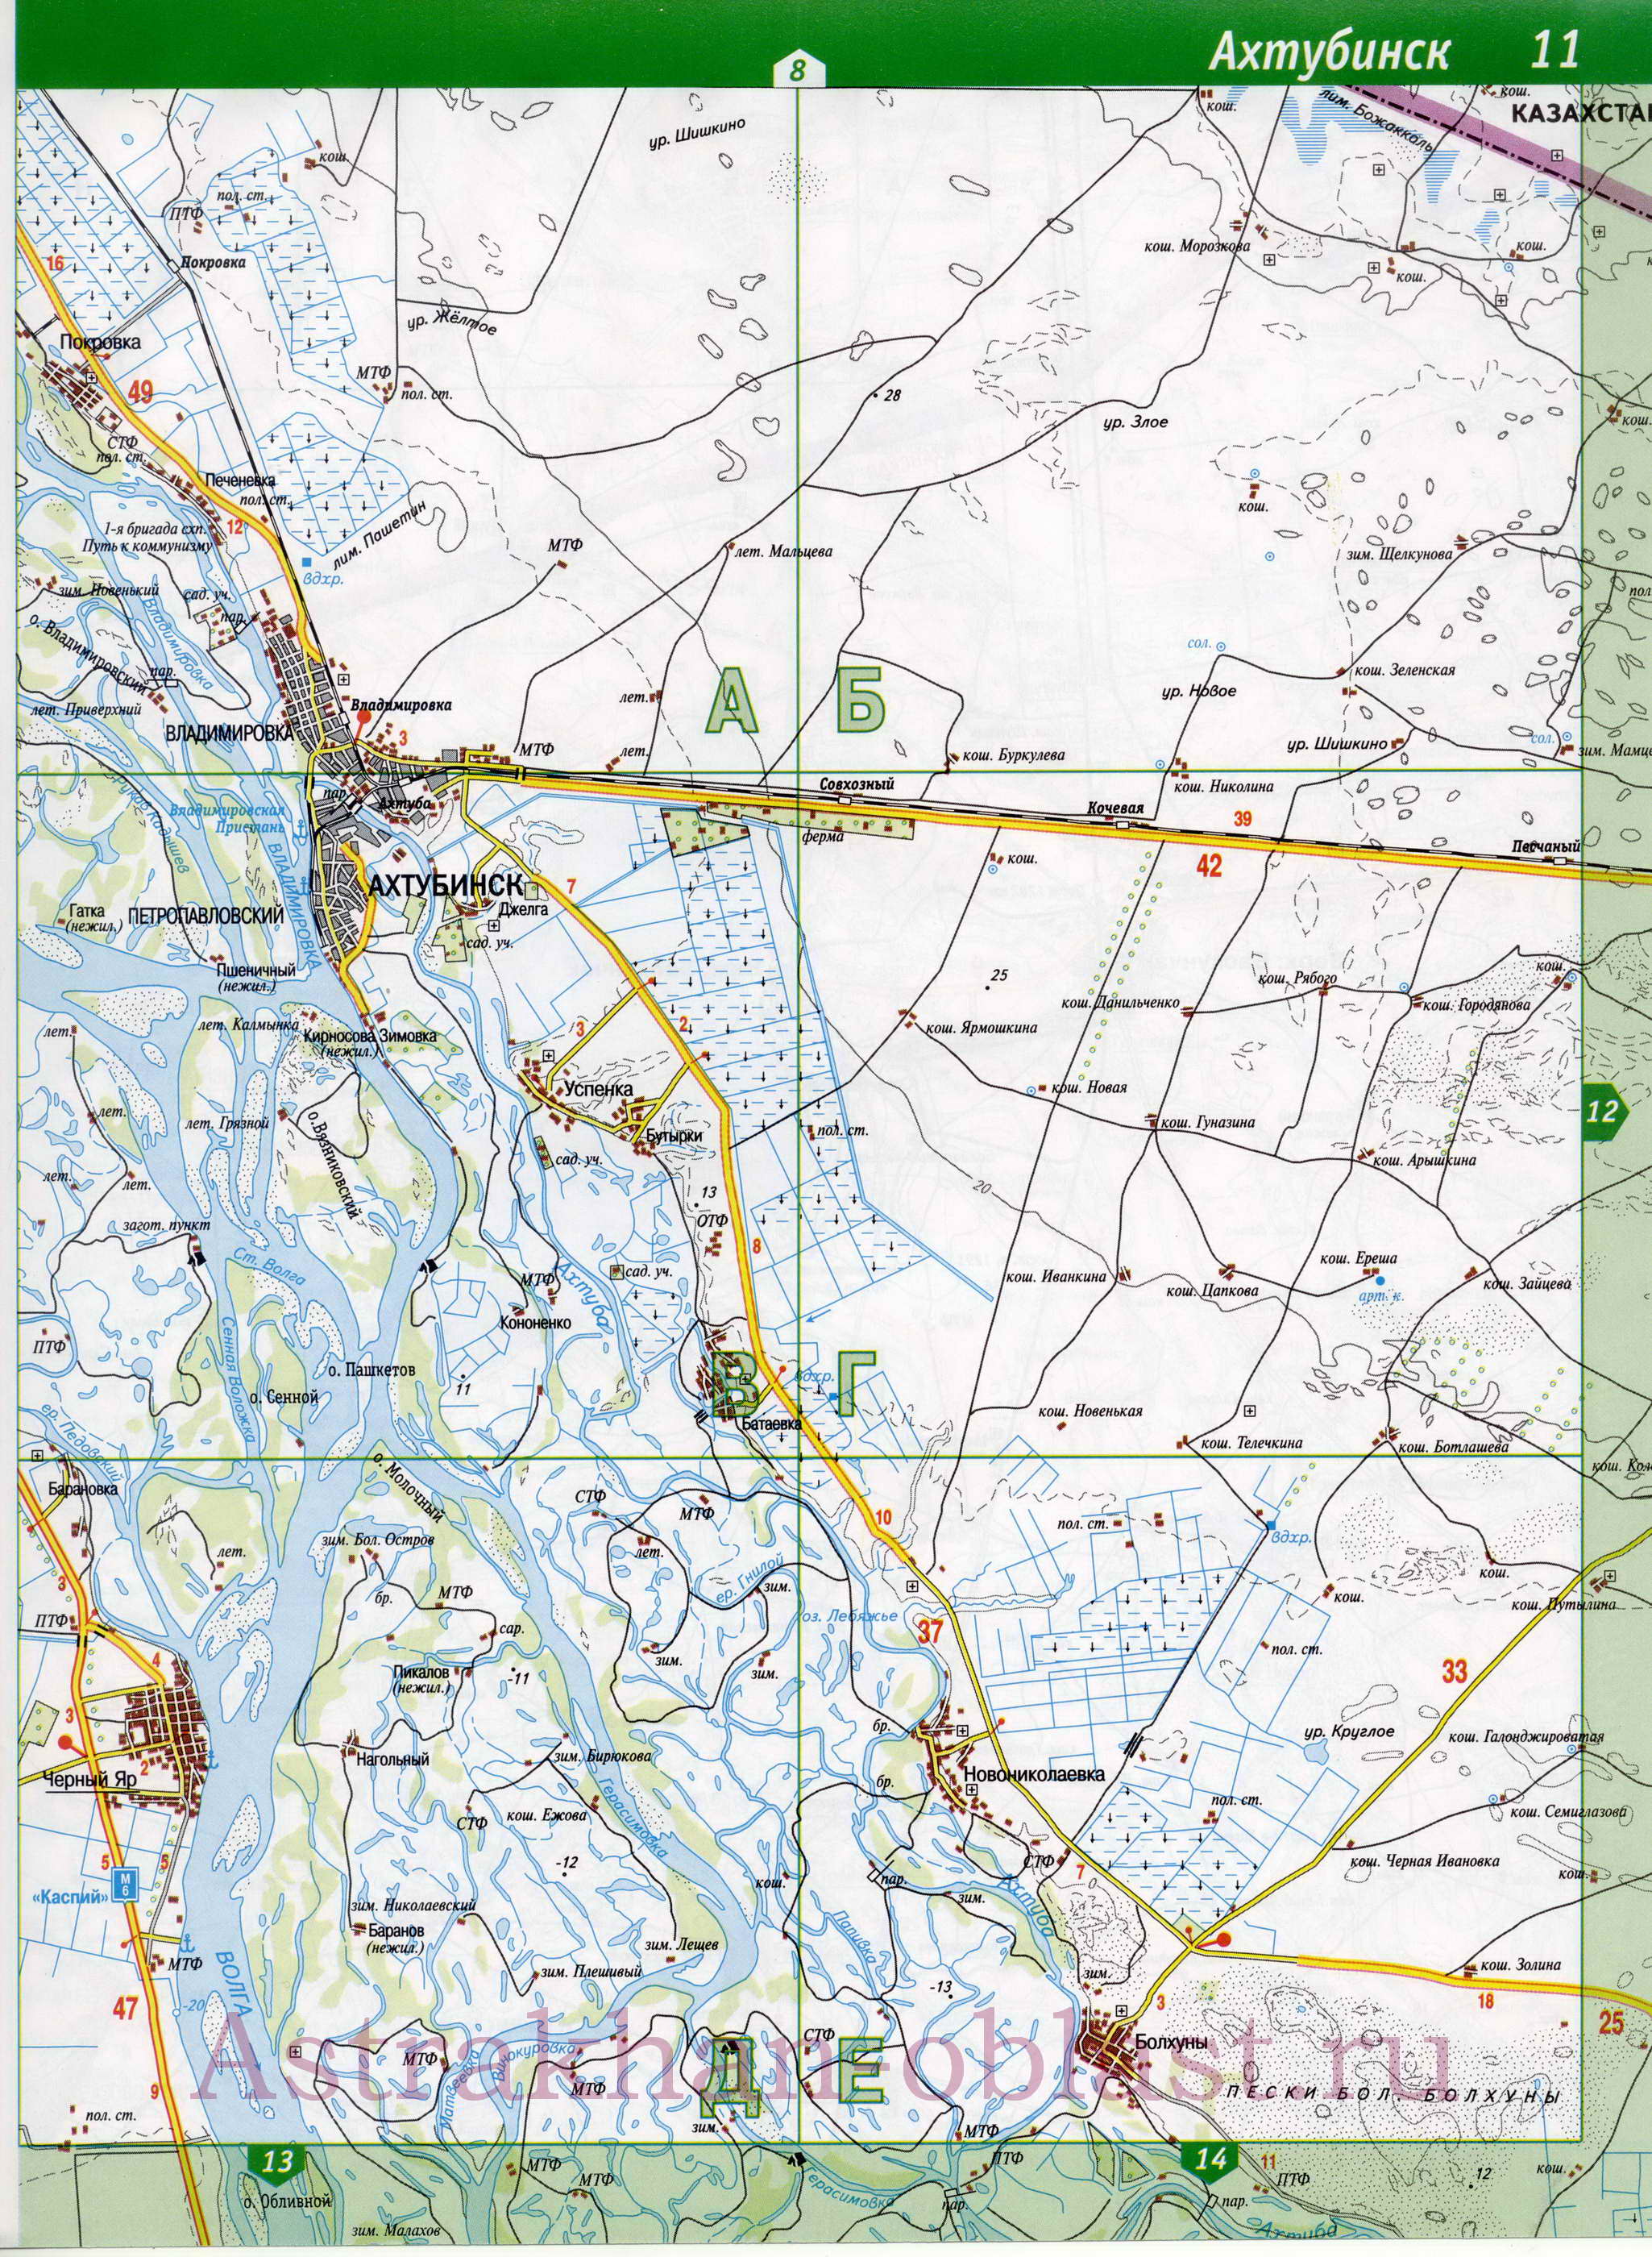 Автомобильная карта Ахтубинска. Подробная карта автомобильных дорог города Ахтубинск Астраханской области, B0 - 